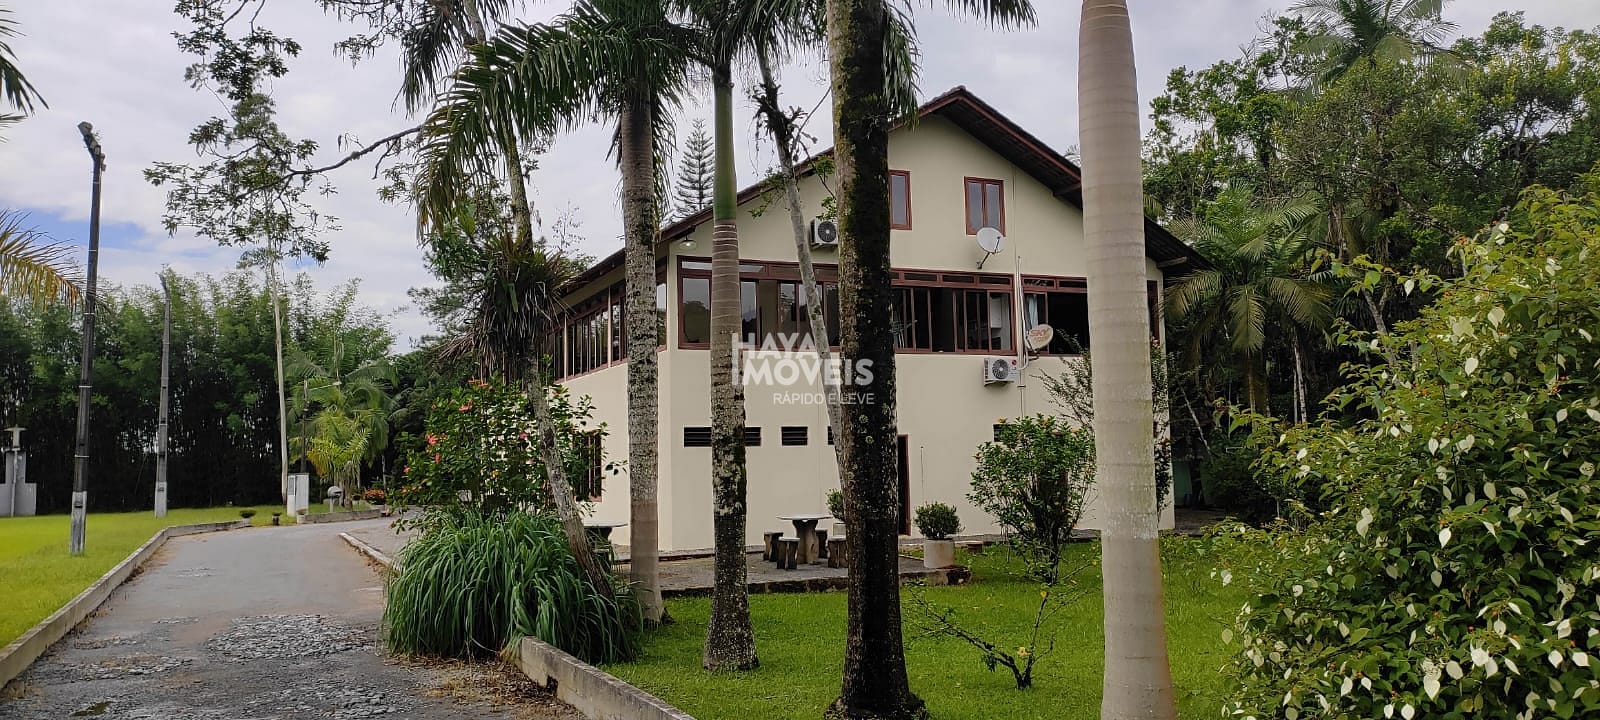 Chácara em Vila Nova, Joinville/SC de 62347m² 1 quartos à venda por R$ 4.499.000,00